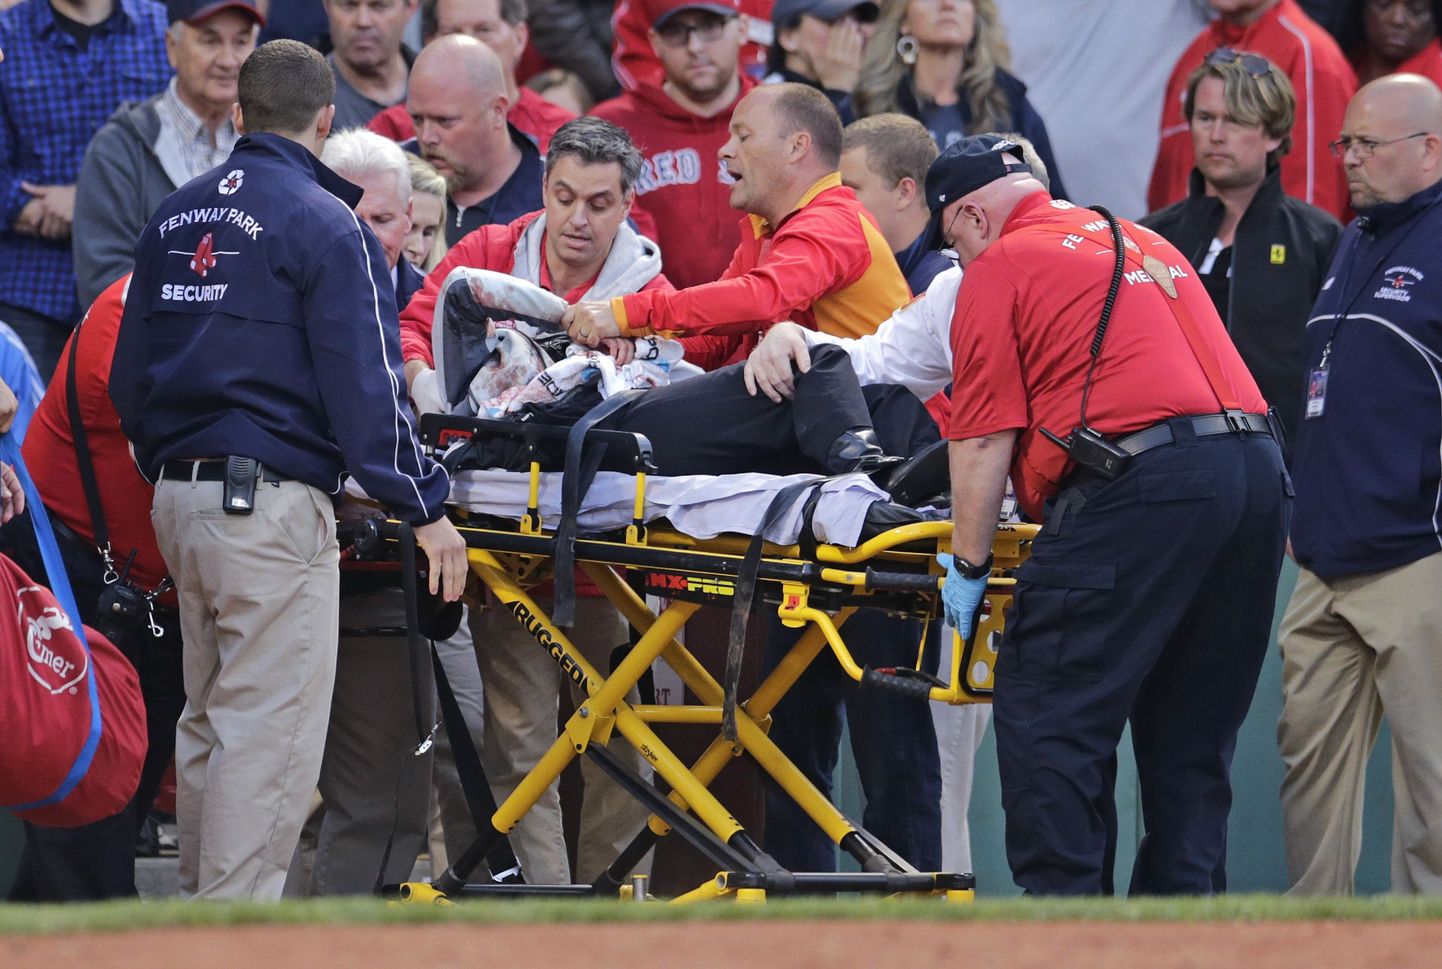 В Бостоне во время бейсбольного матча с участием местной команды «Бостон Ред Сокс» произошел несчастный случай, в результате которого тяжелую травму получила одна из болельщиц.